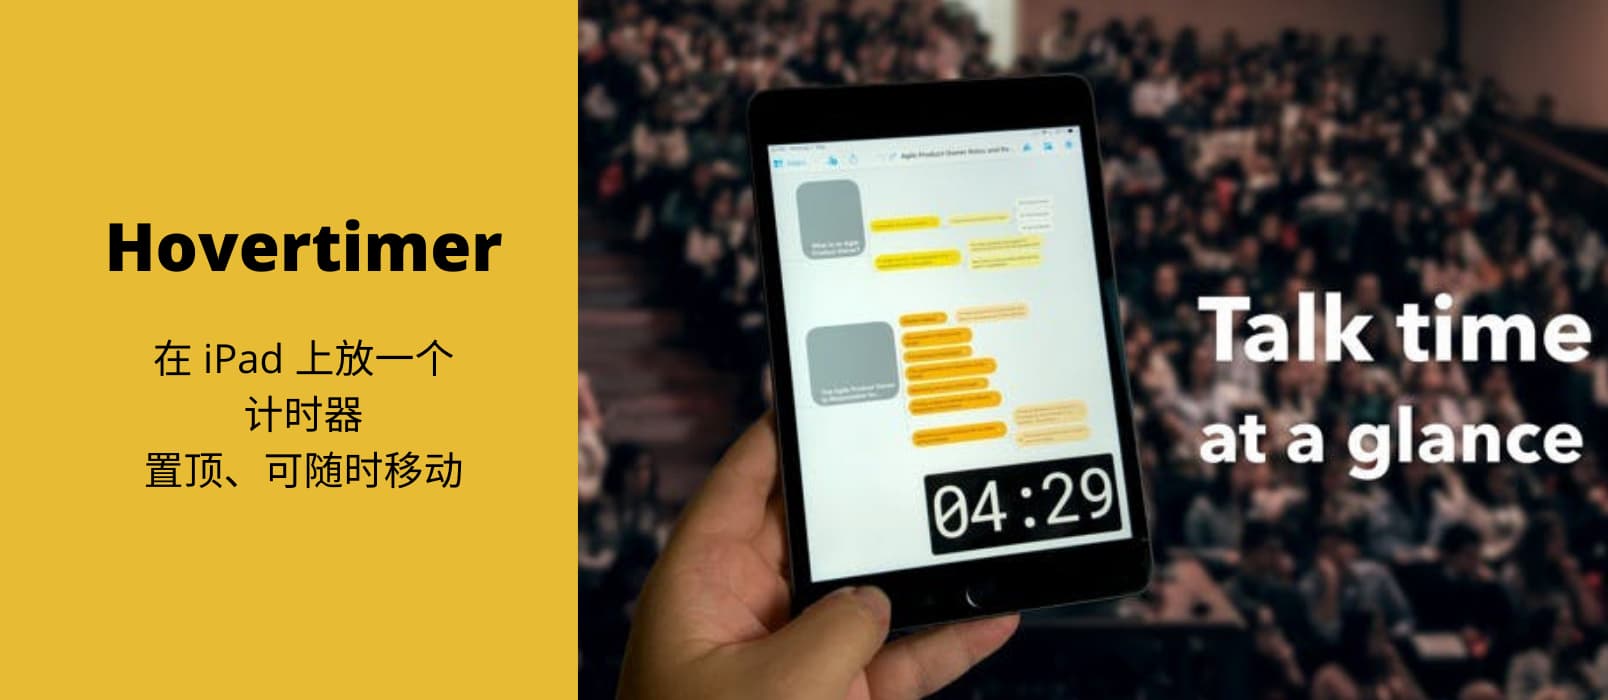 Hovertimer - 在 iPad 上放一个迷你计时器，置顶、可随时移动 1